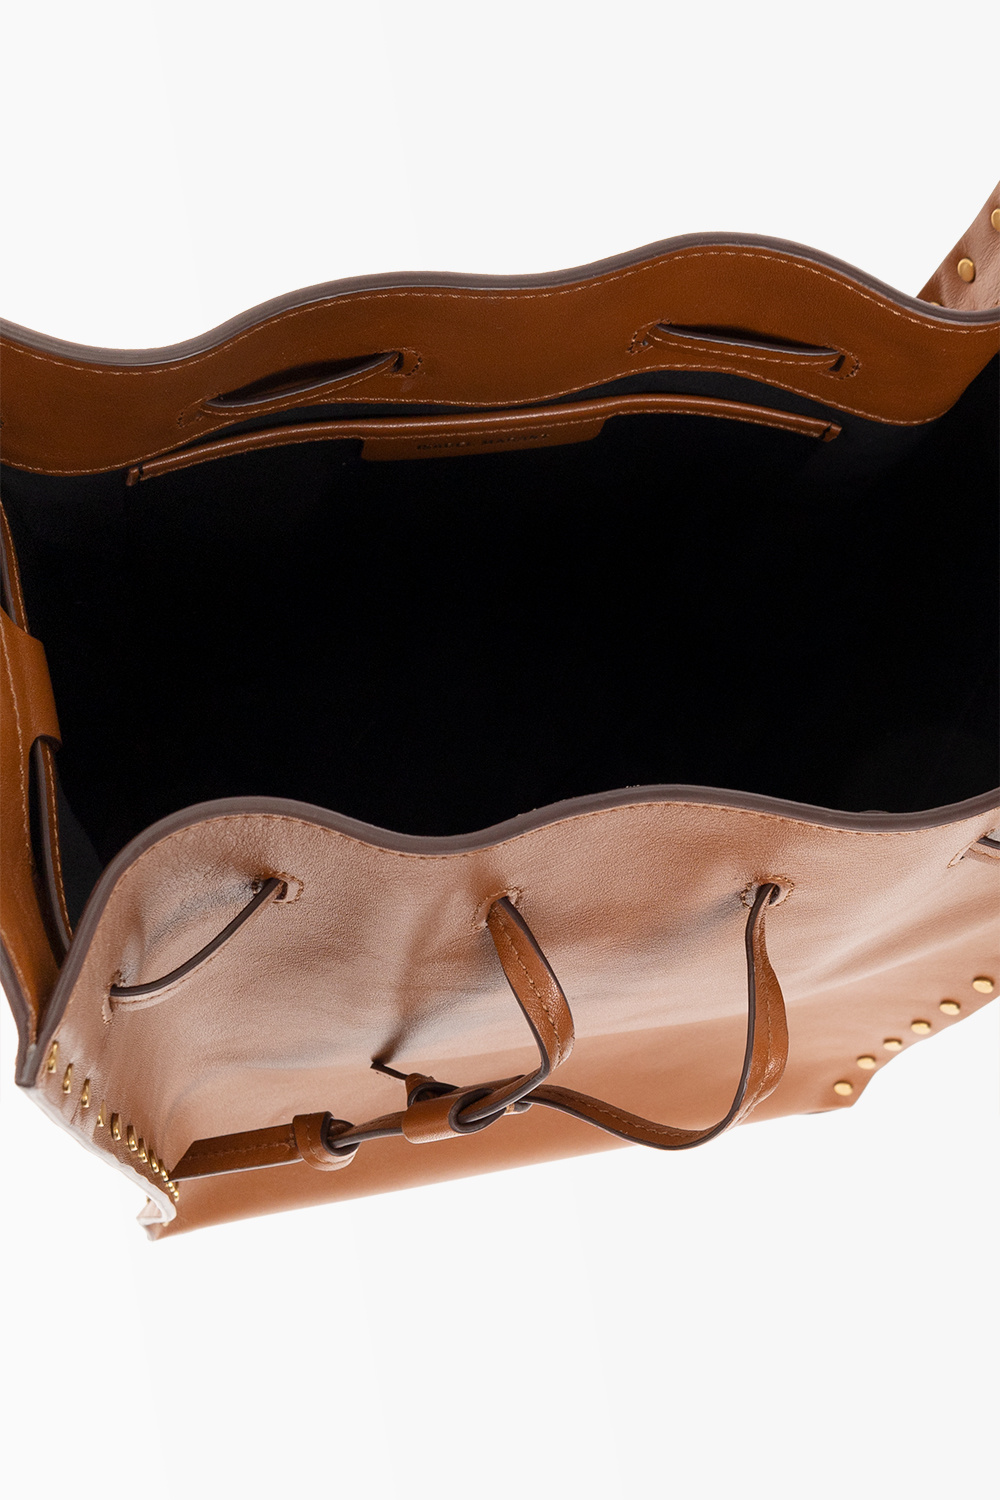 Isabel Marant Buky drawstring-fastening shoulder bag, Louis Vuitton Cannes Shoulder  bag 389047